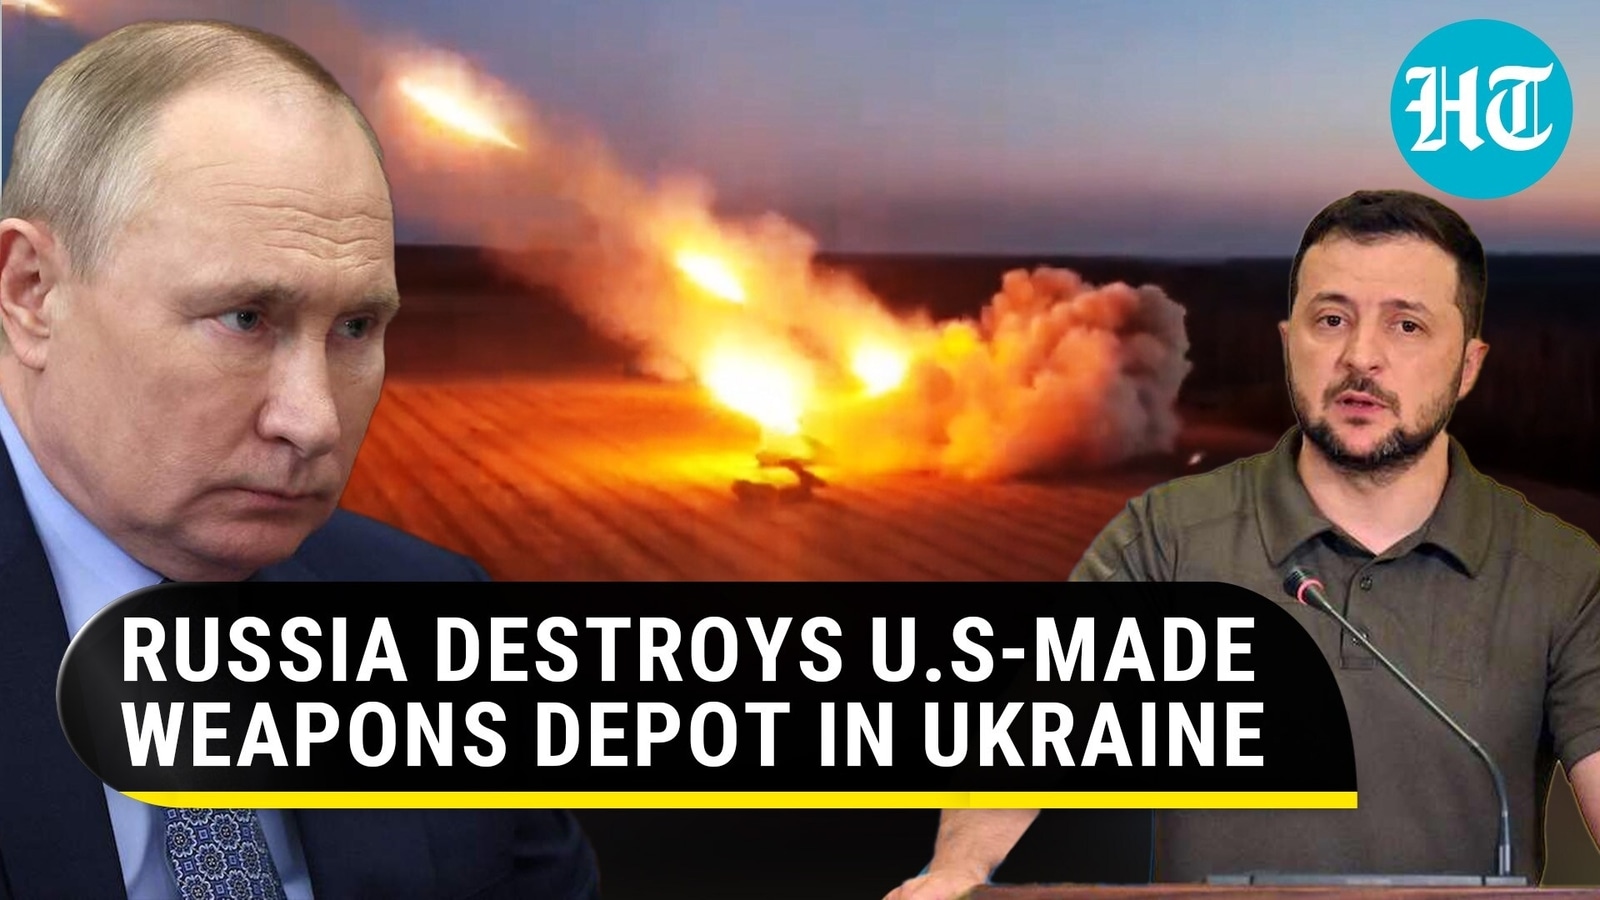 Putin's Men Strike U.S HIMARS, M777 Howitzers at Weapons Depot in Ukraine